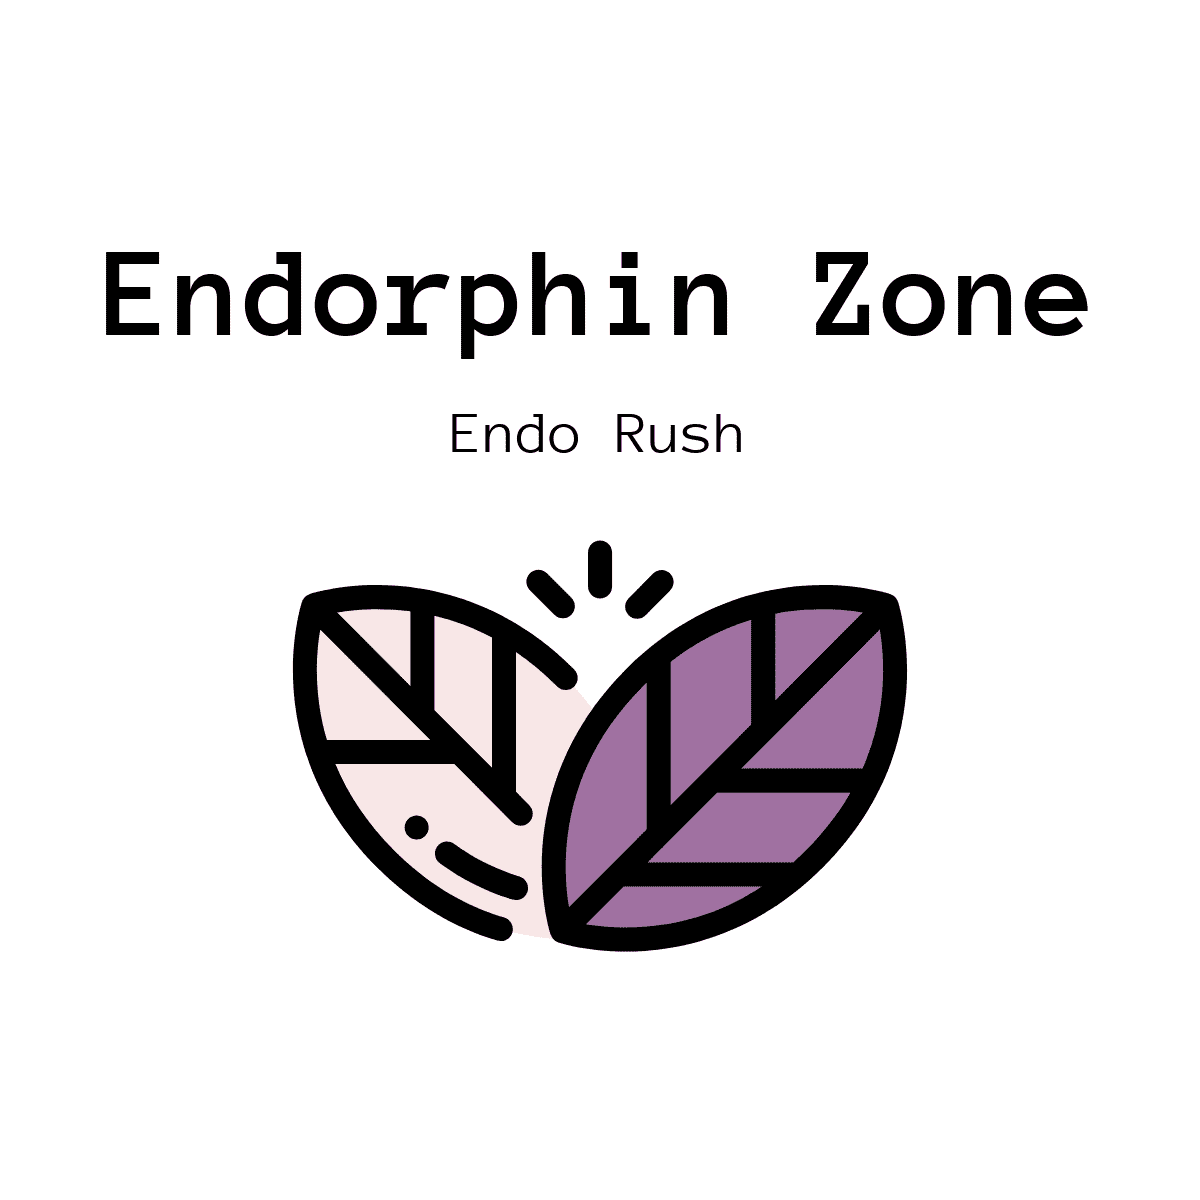 Endorphin Zone